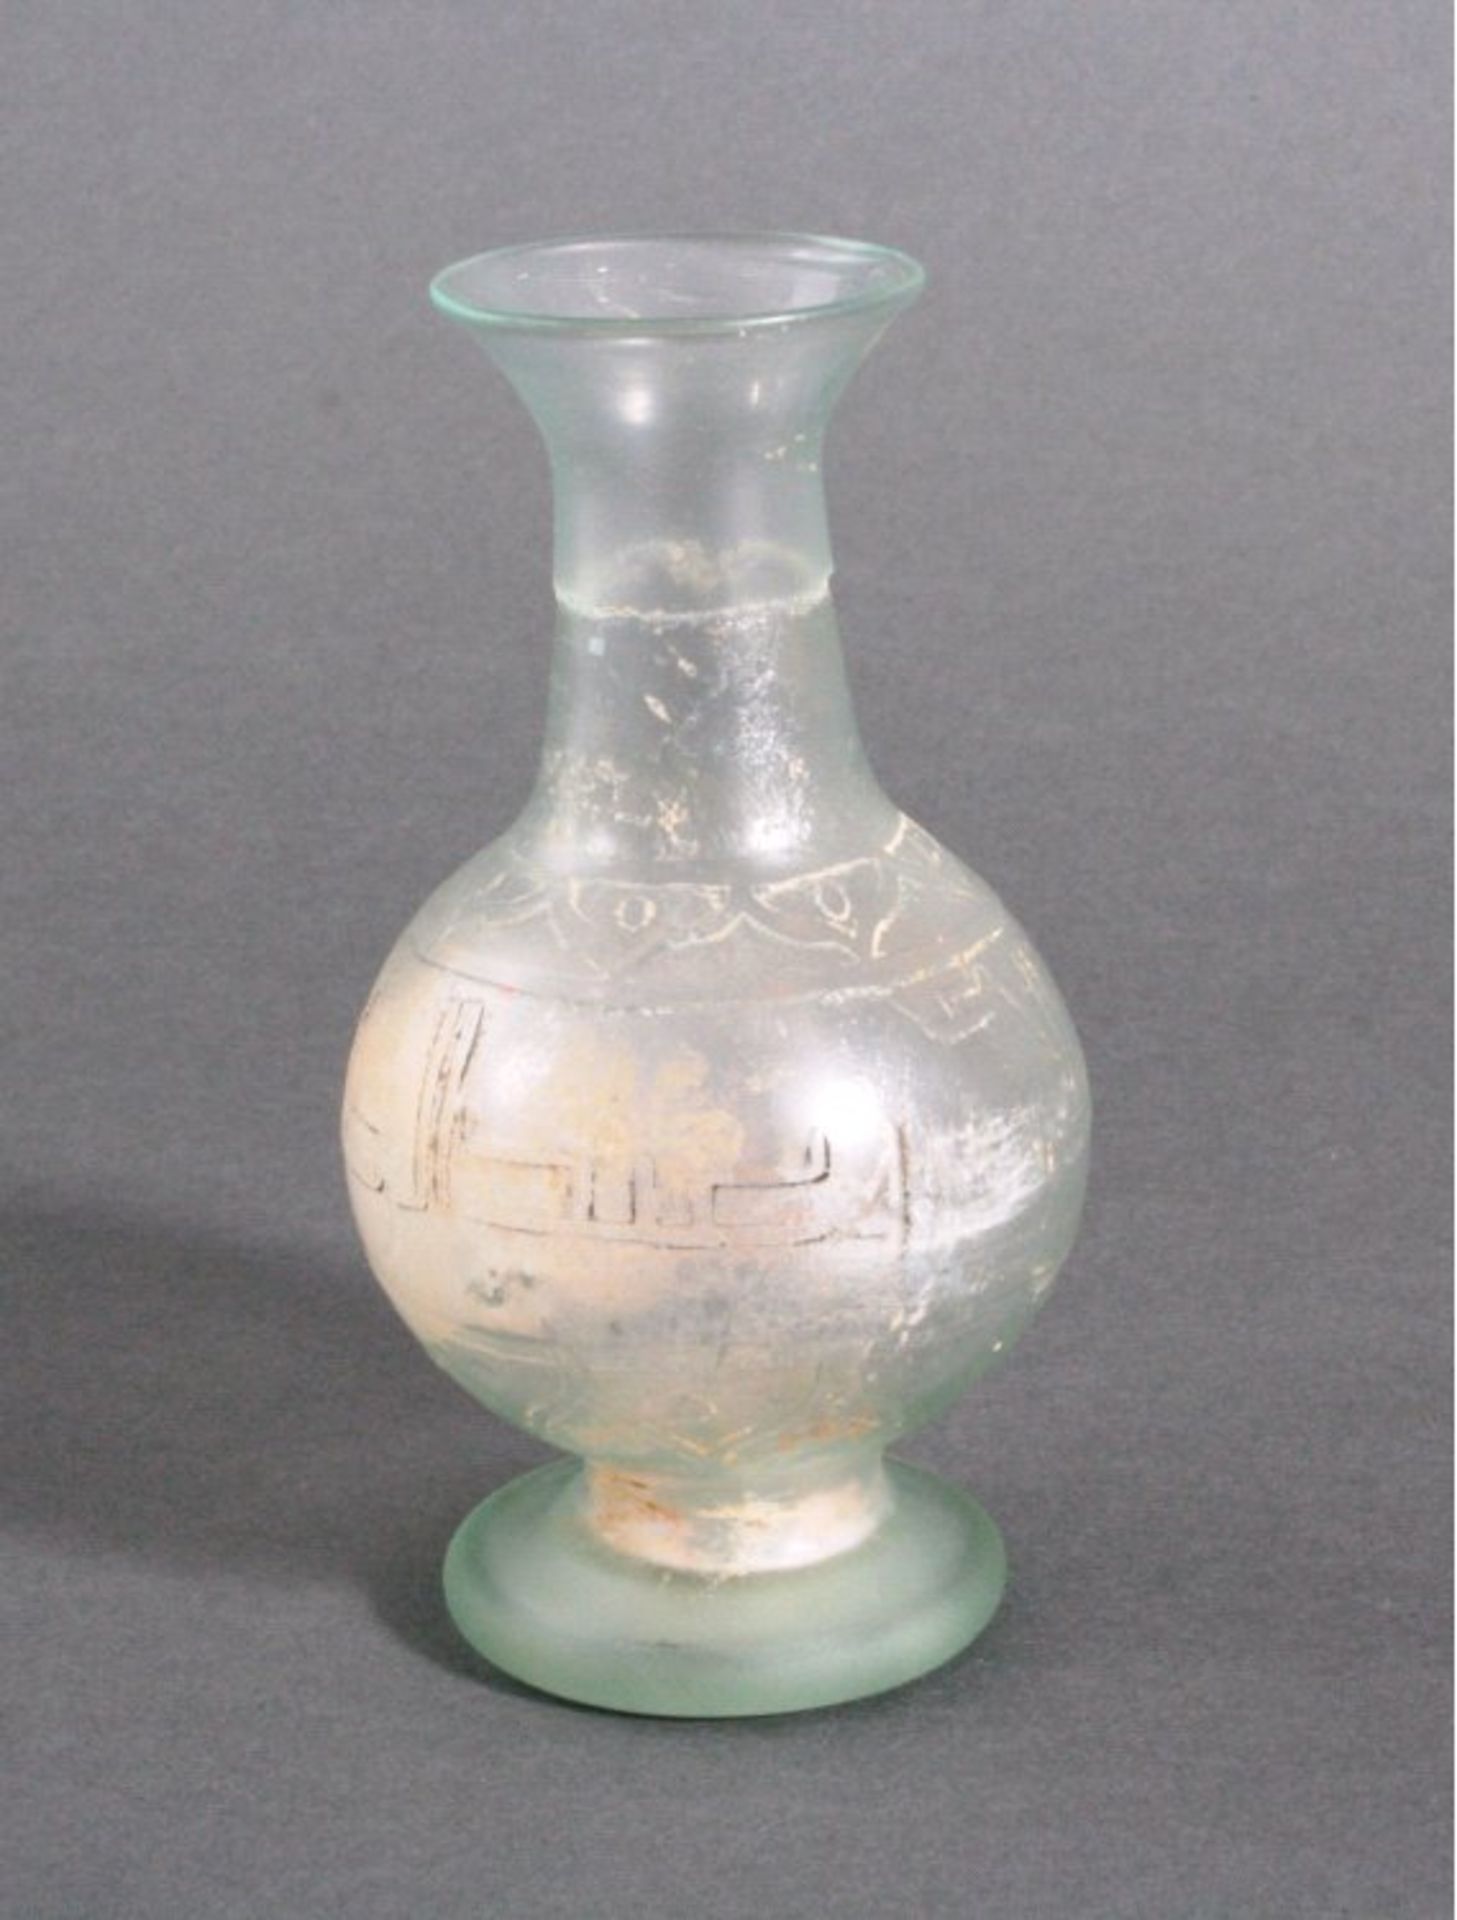 Balustervase aus Glas, Ägypten oder Syrien wohl 13./14. Jh.grünliches Glas mit Lufteinschlüssen,